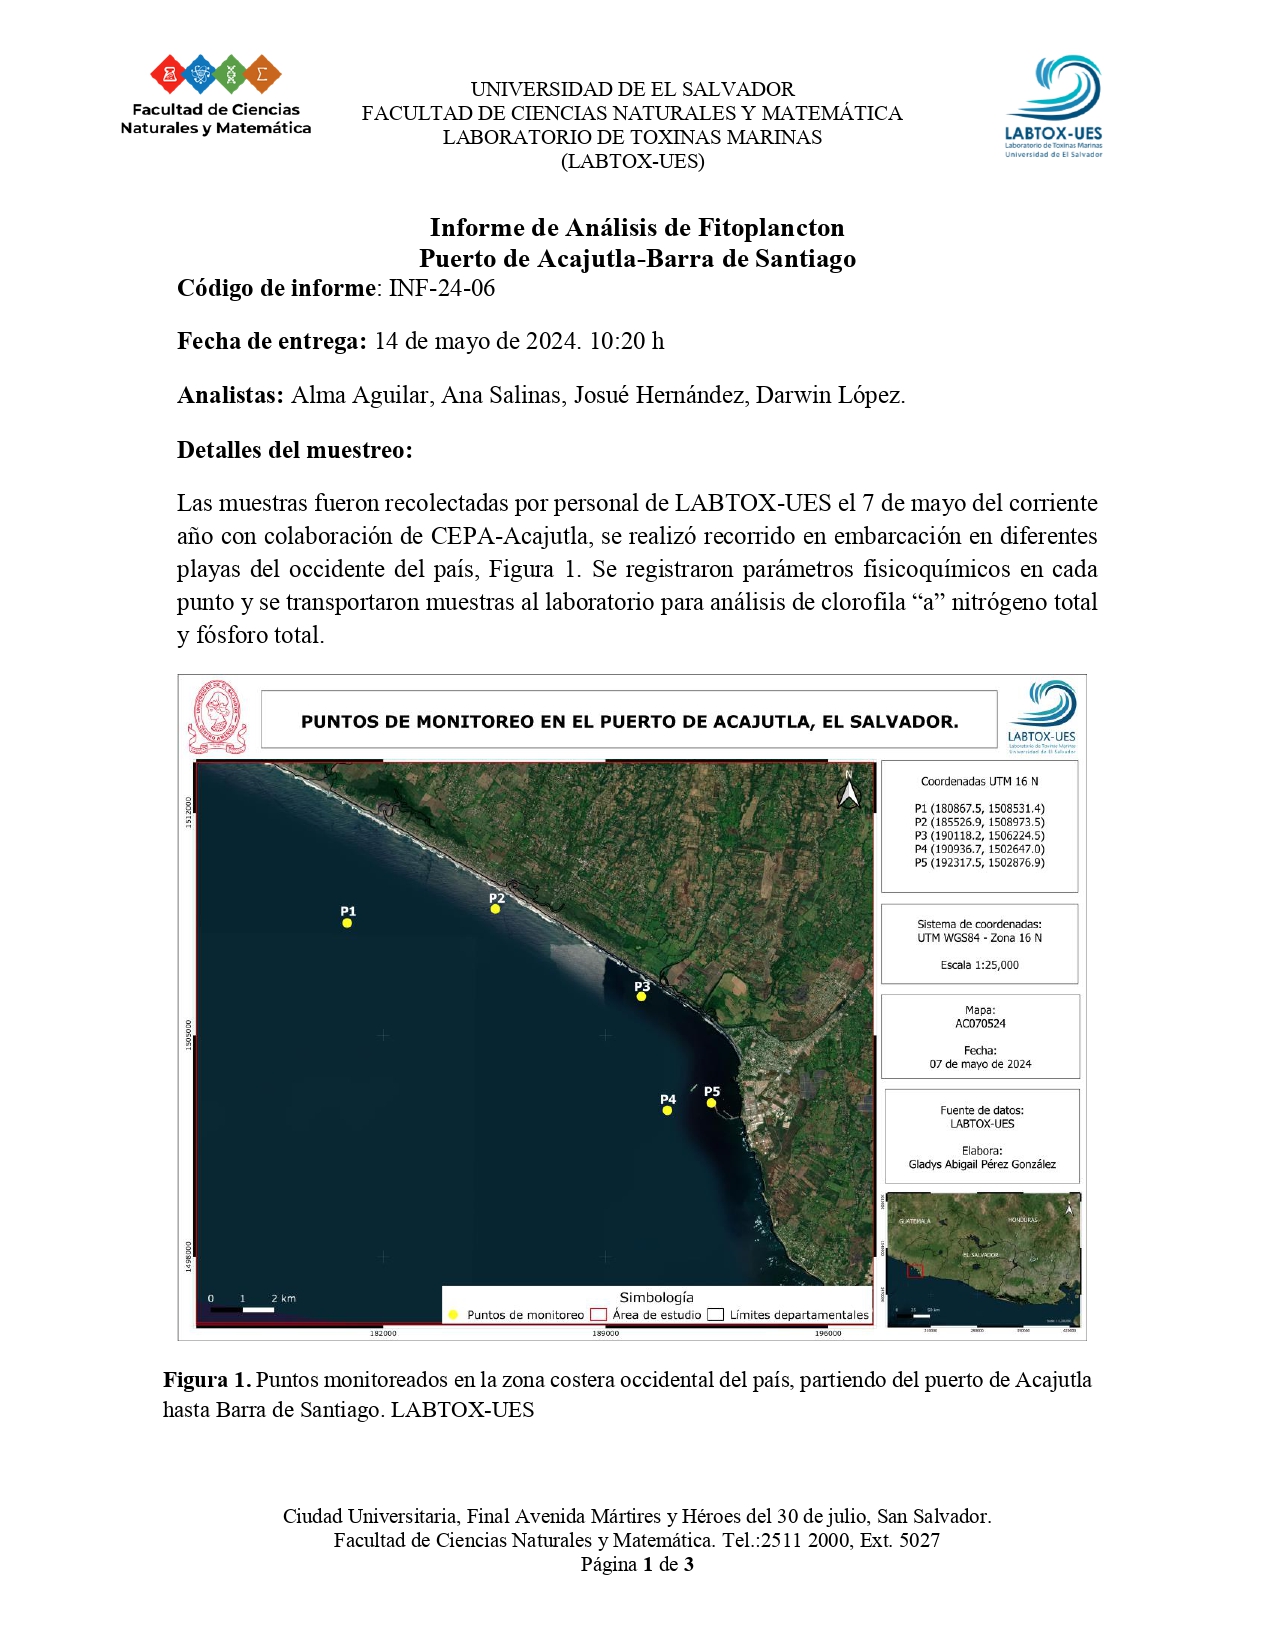 Informe de Análisis de Fitoplancton Puerto de Acajutla